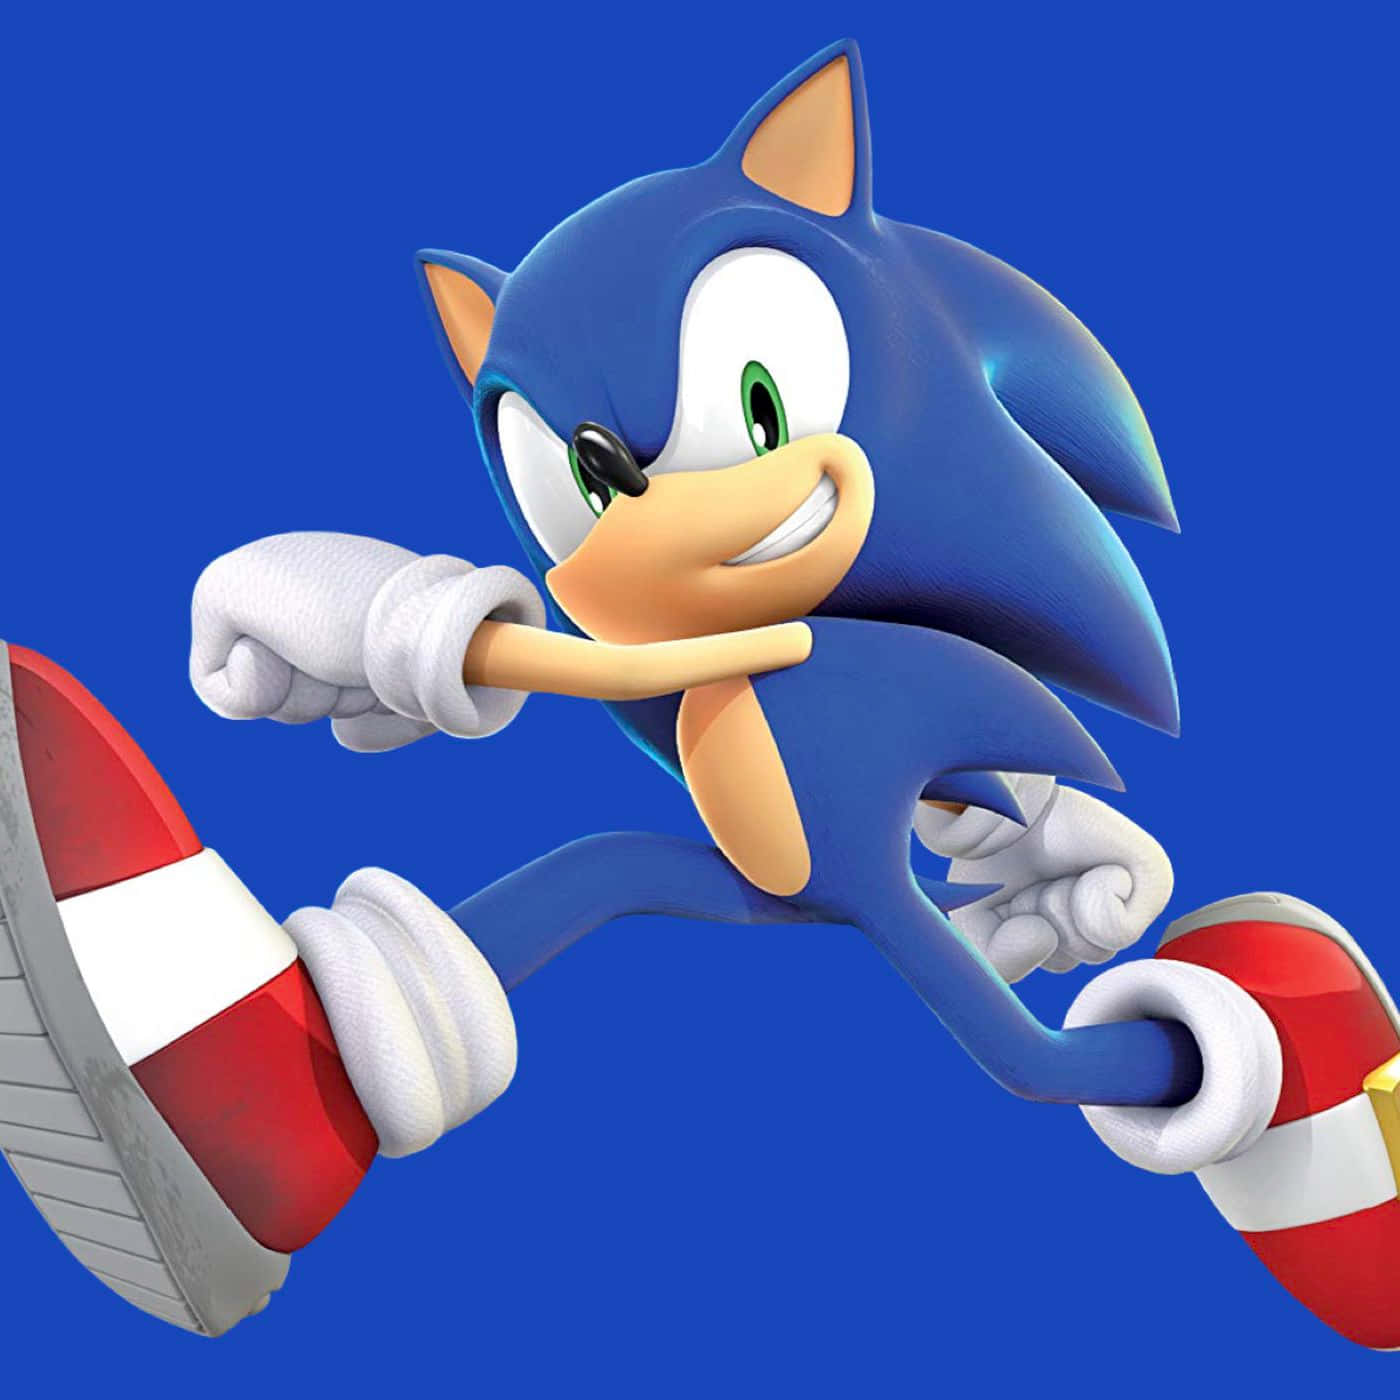 Sonicthe Hedgehog Corriendo Por El Mundo De Sonic.